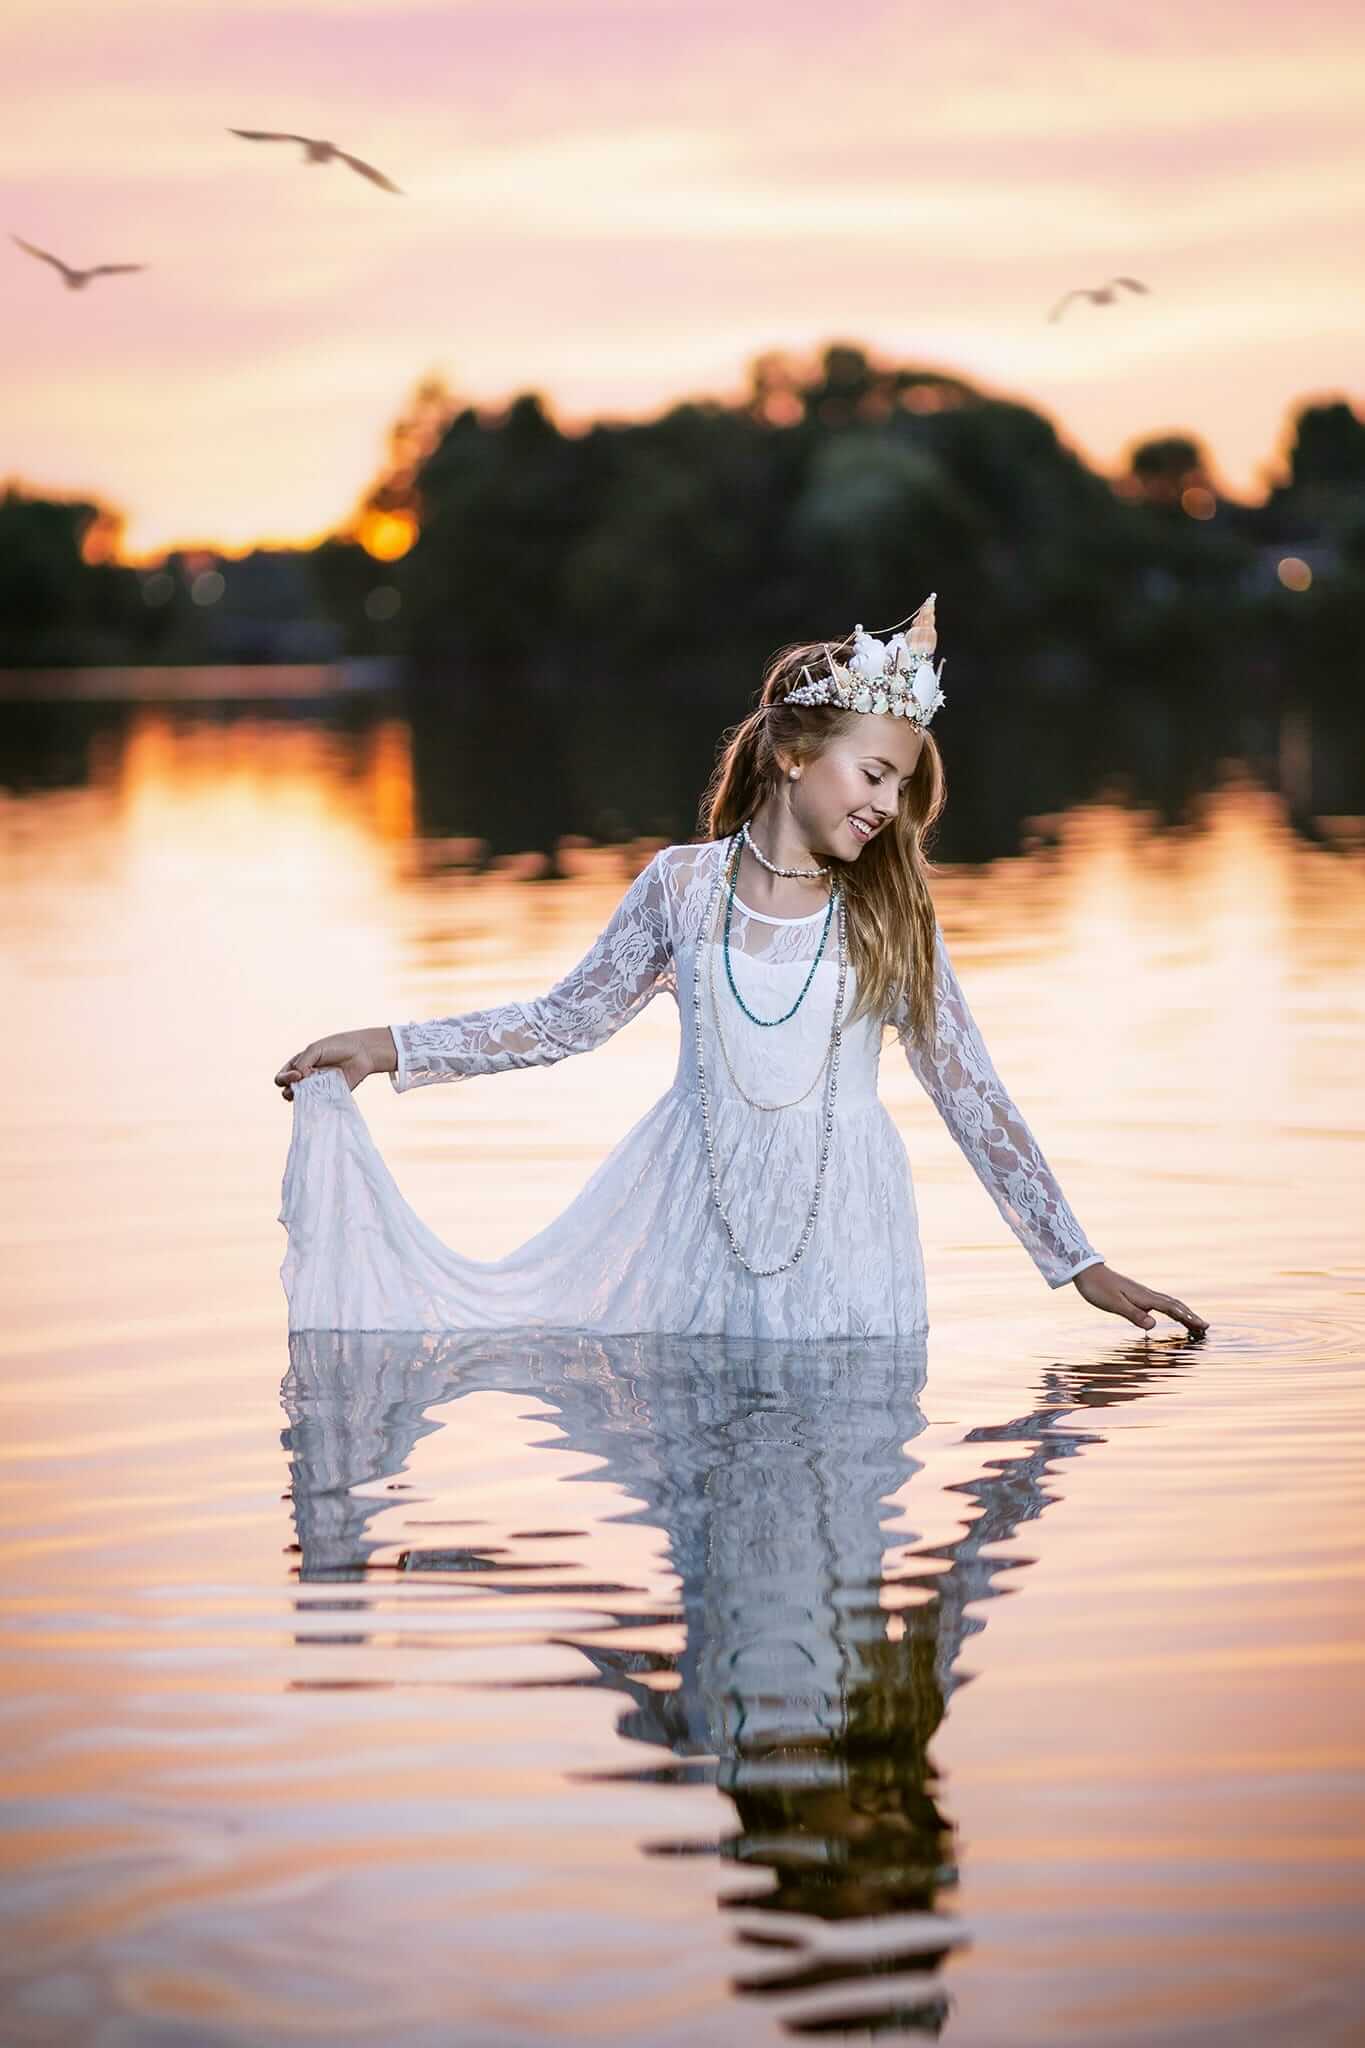 Une fille en robe blanche, capturée par le photographe, debout dans l'eau au coucher du soleil.